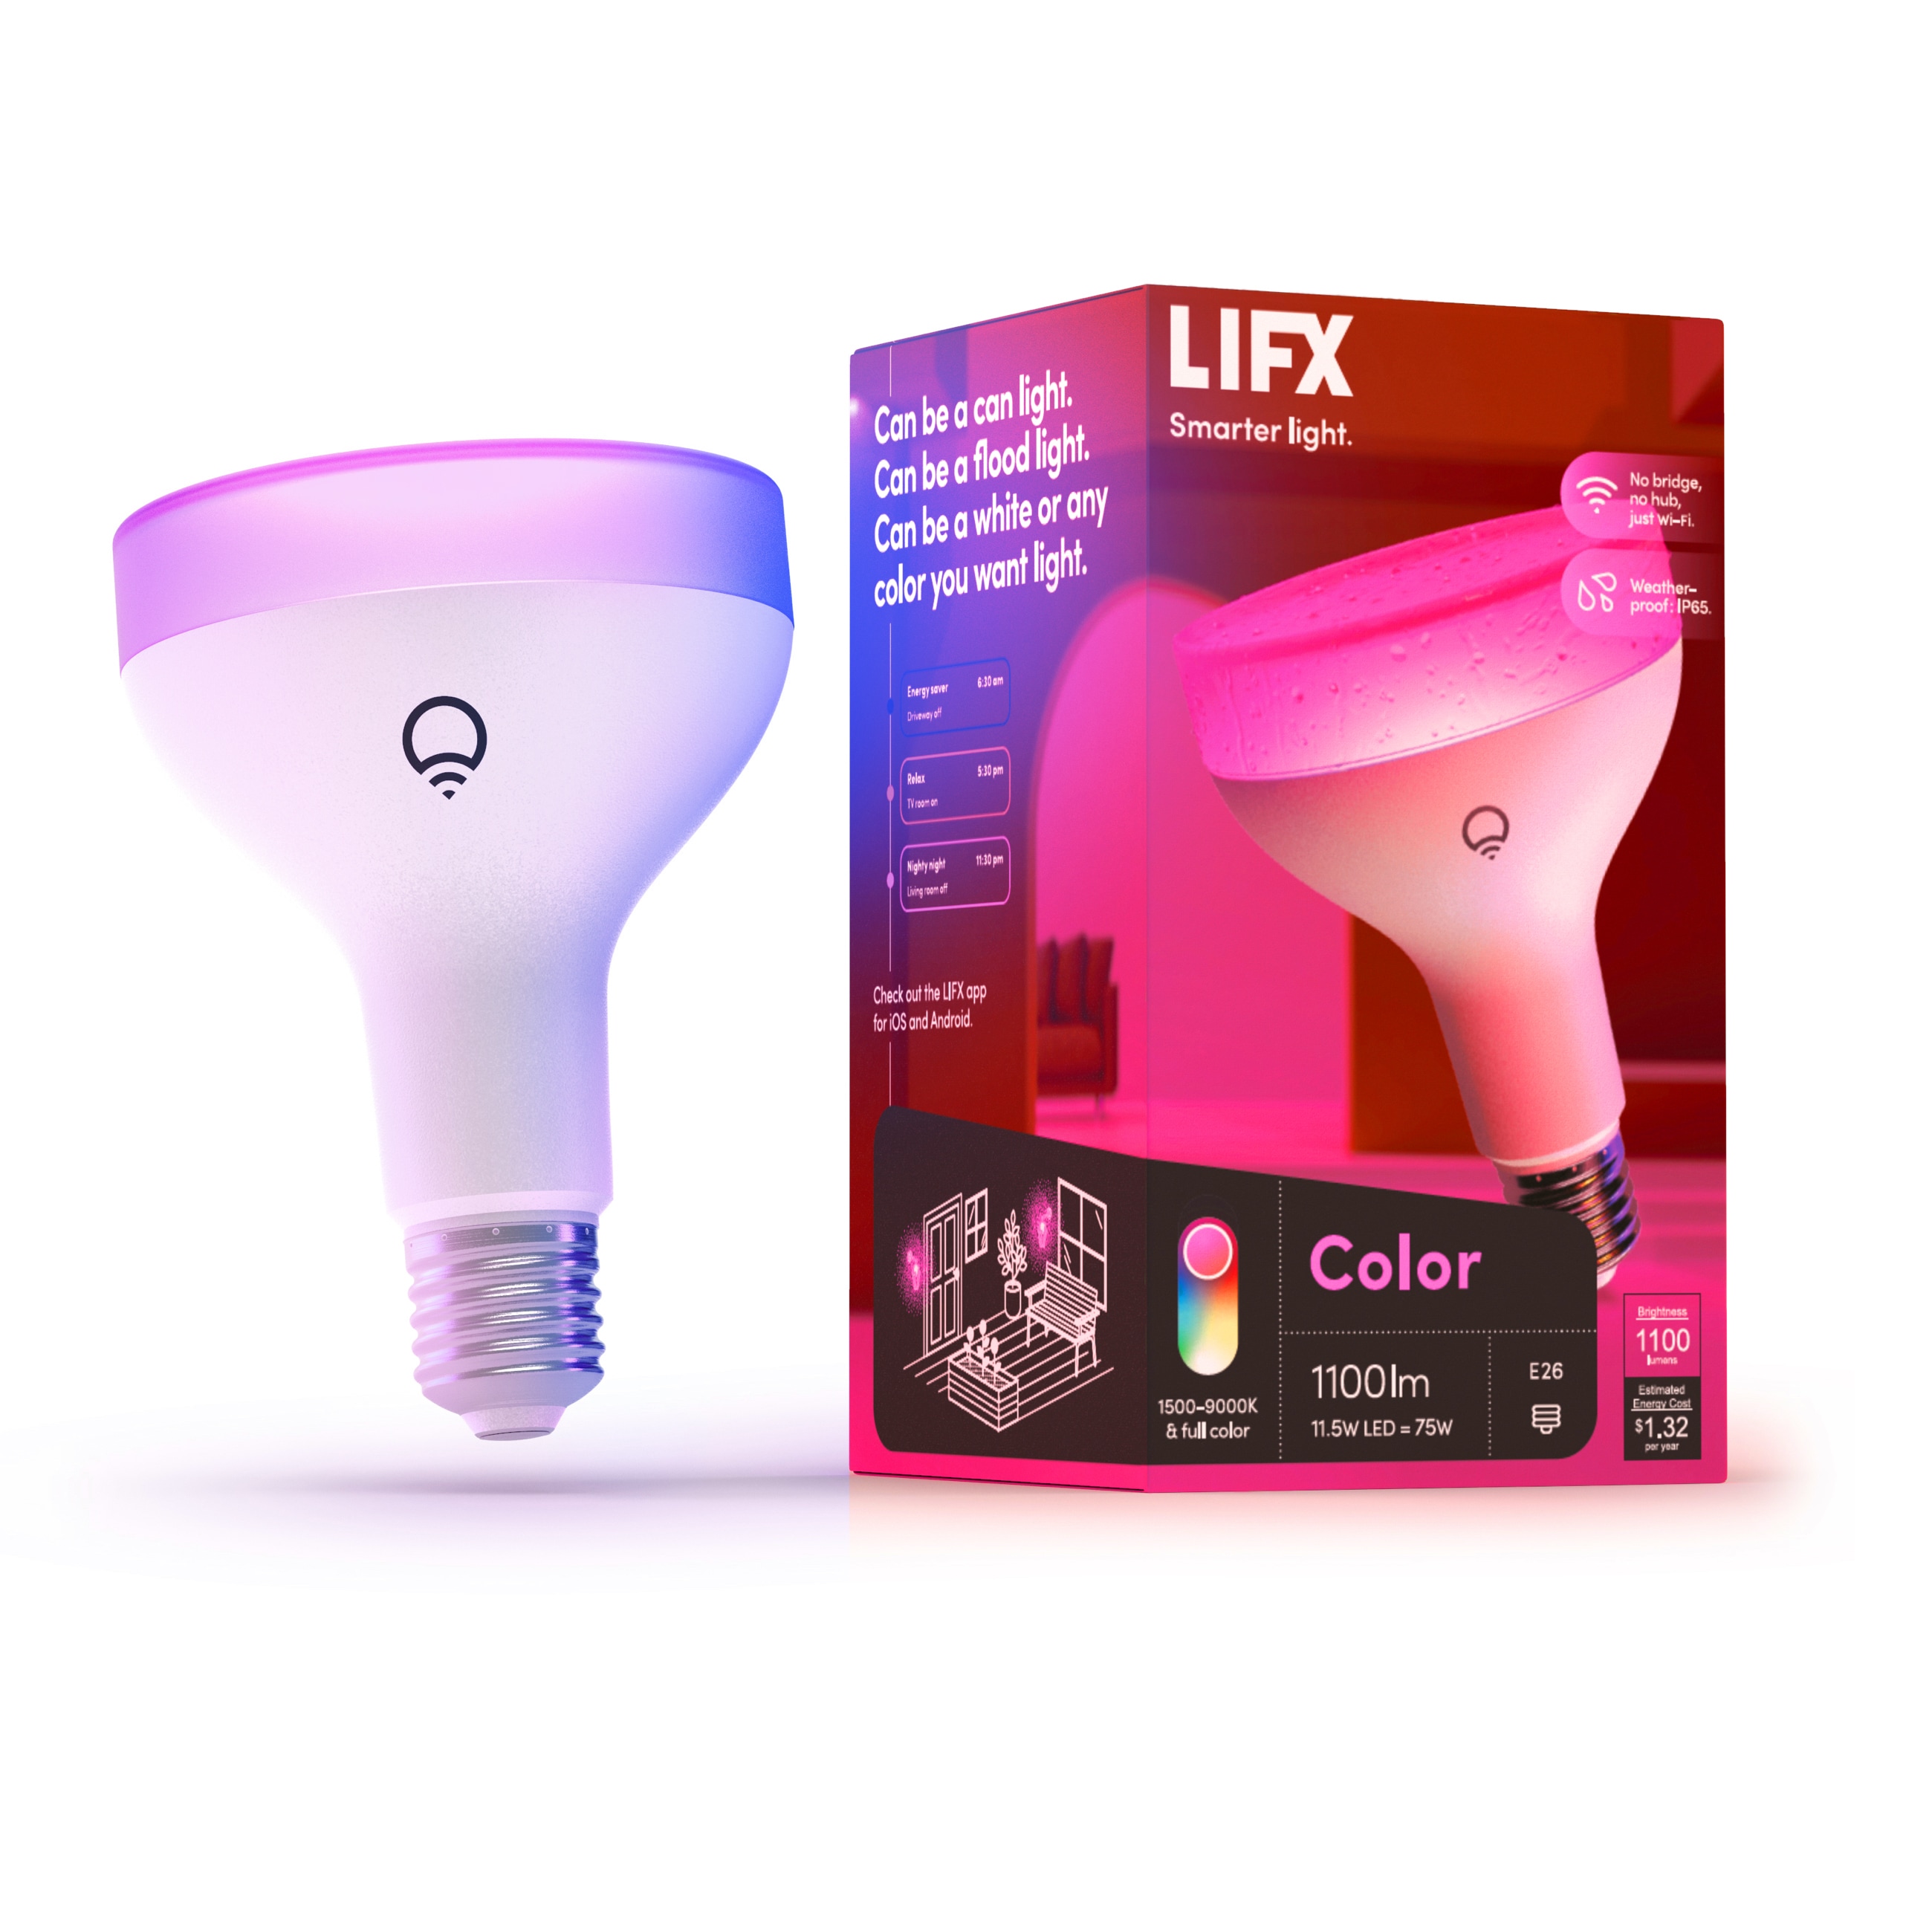 Mindst Skænk bekymre LIFX Light Bulbs at Lowes.com